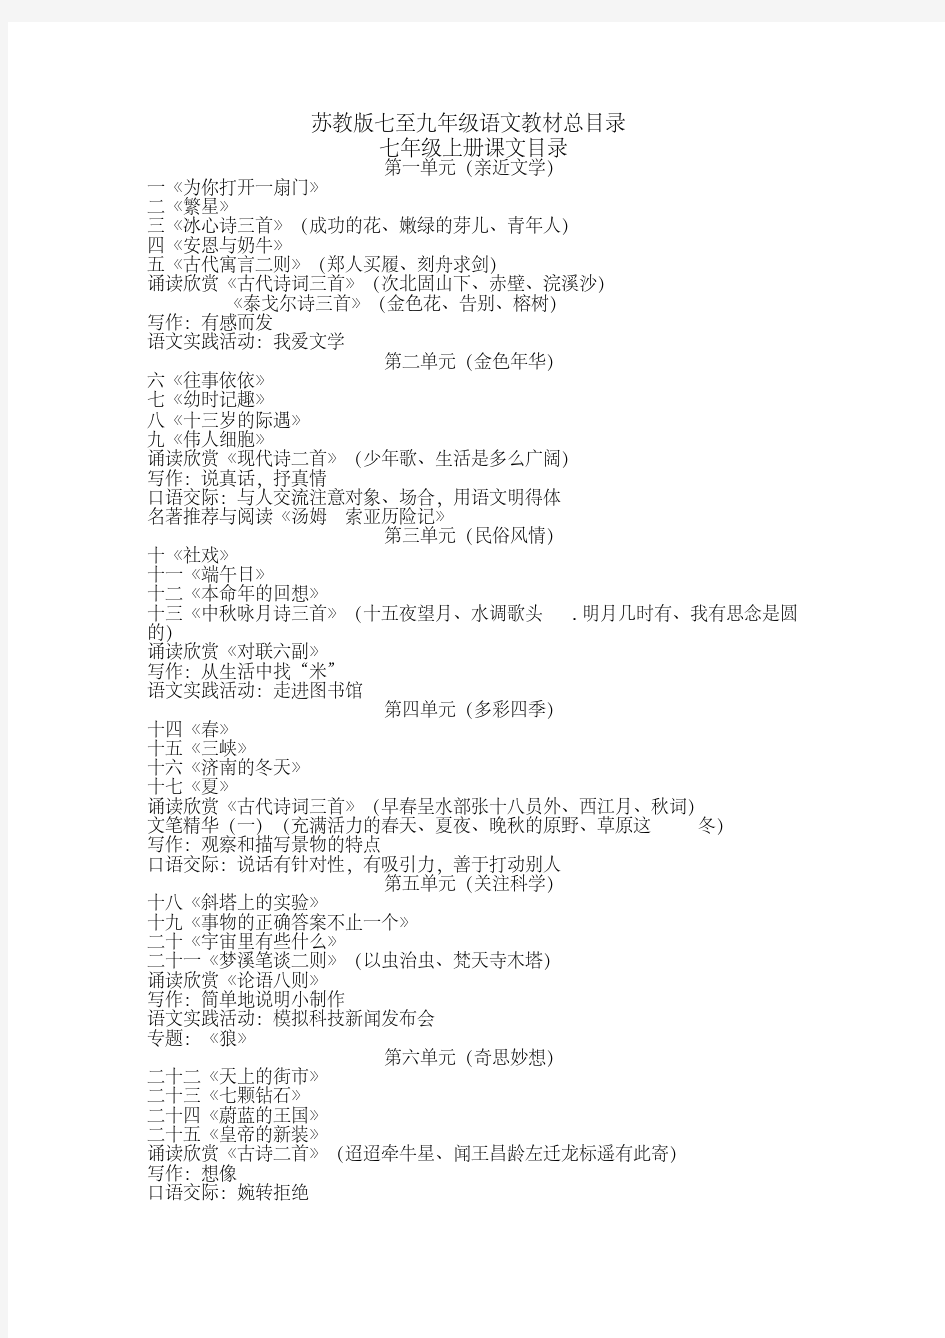 新版苏教版初中语文教材总目录-新版-精选.pdf